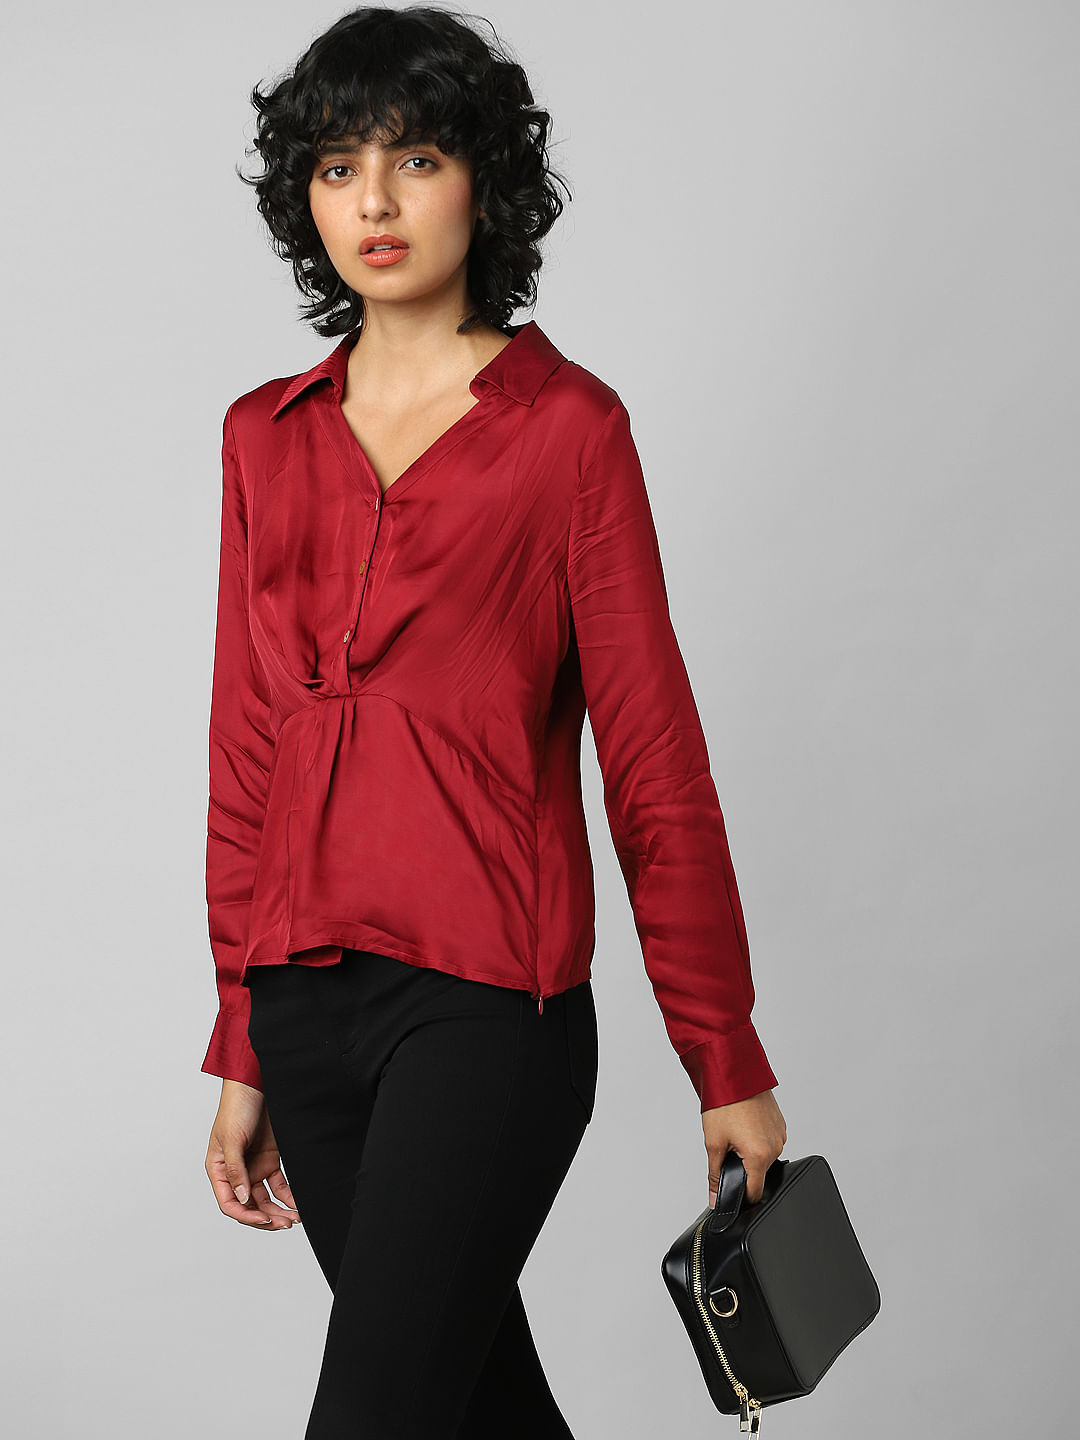 Bebe Rexha: Red Crop Top, Black Pants | Steal Her Style